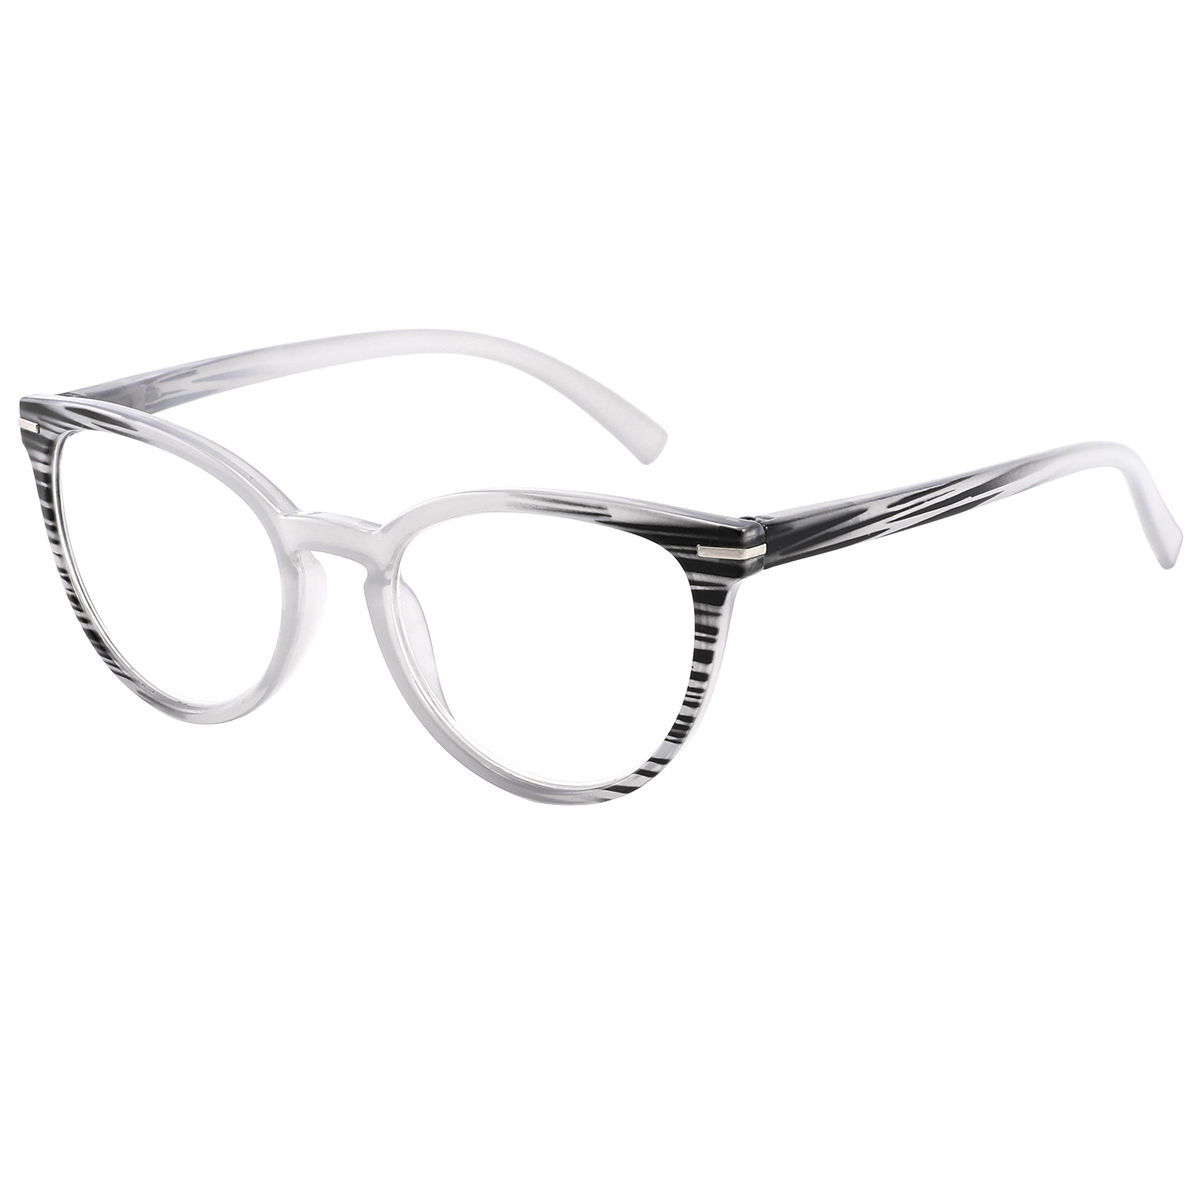 Mogul - Cat-eye Gray Reading Glasses for Women